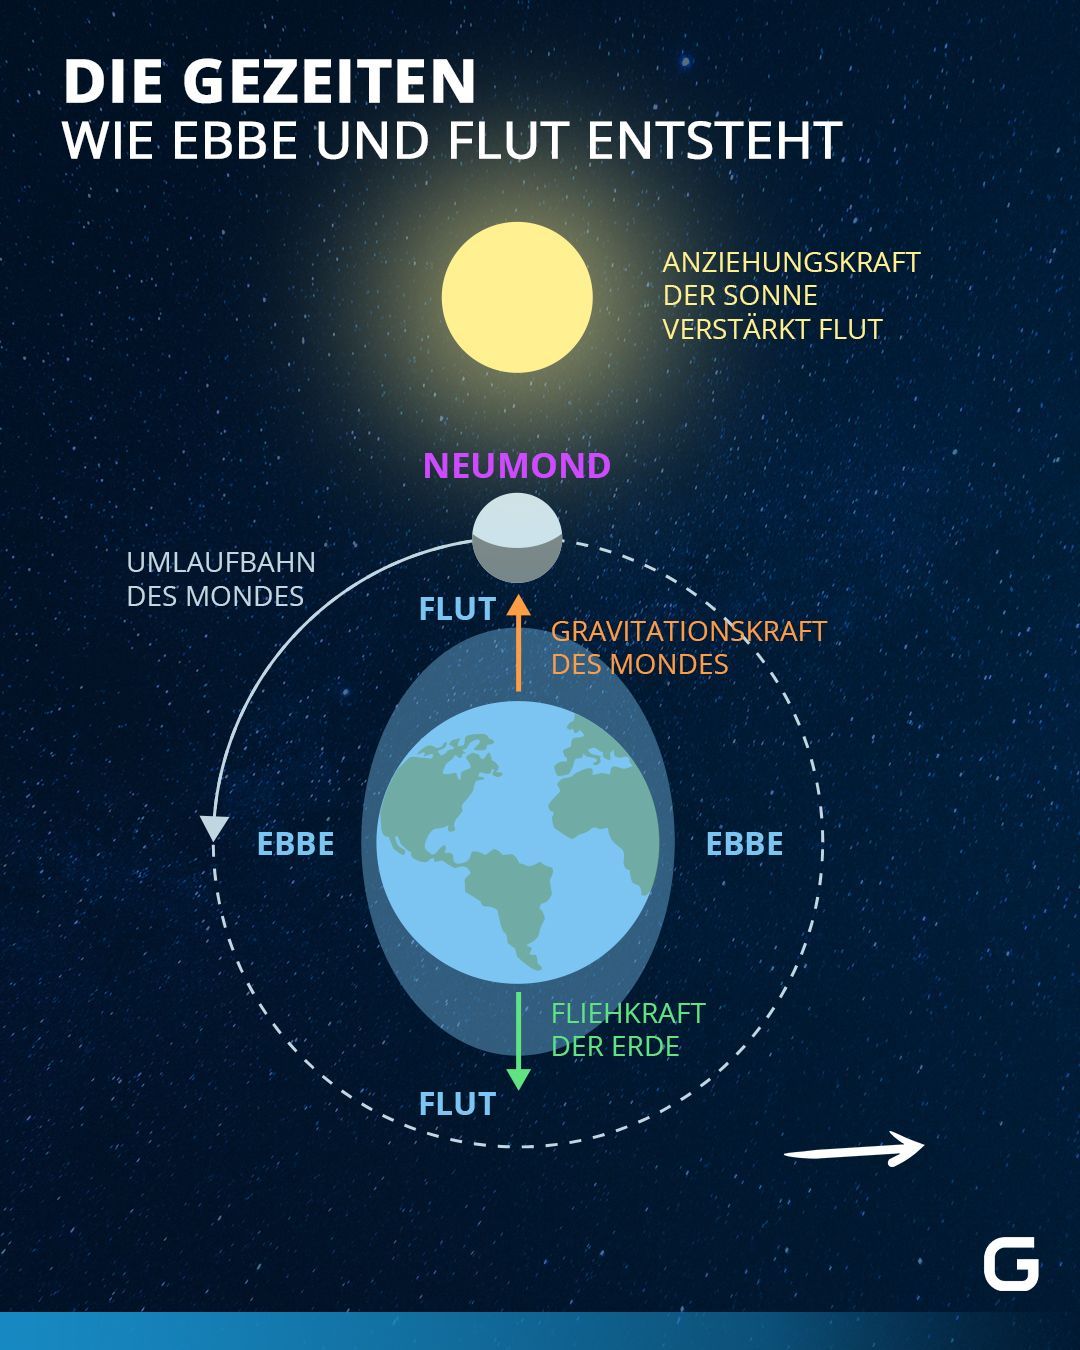 Bei Neumond werden die Gravitationskräfte des Mondes durch die Sonne verstärkt und es kommt zur Springflut.